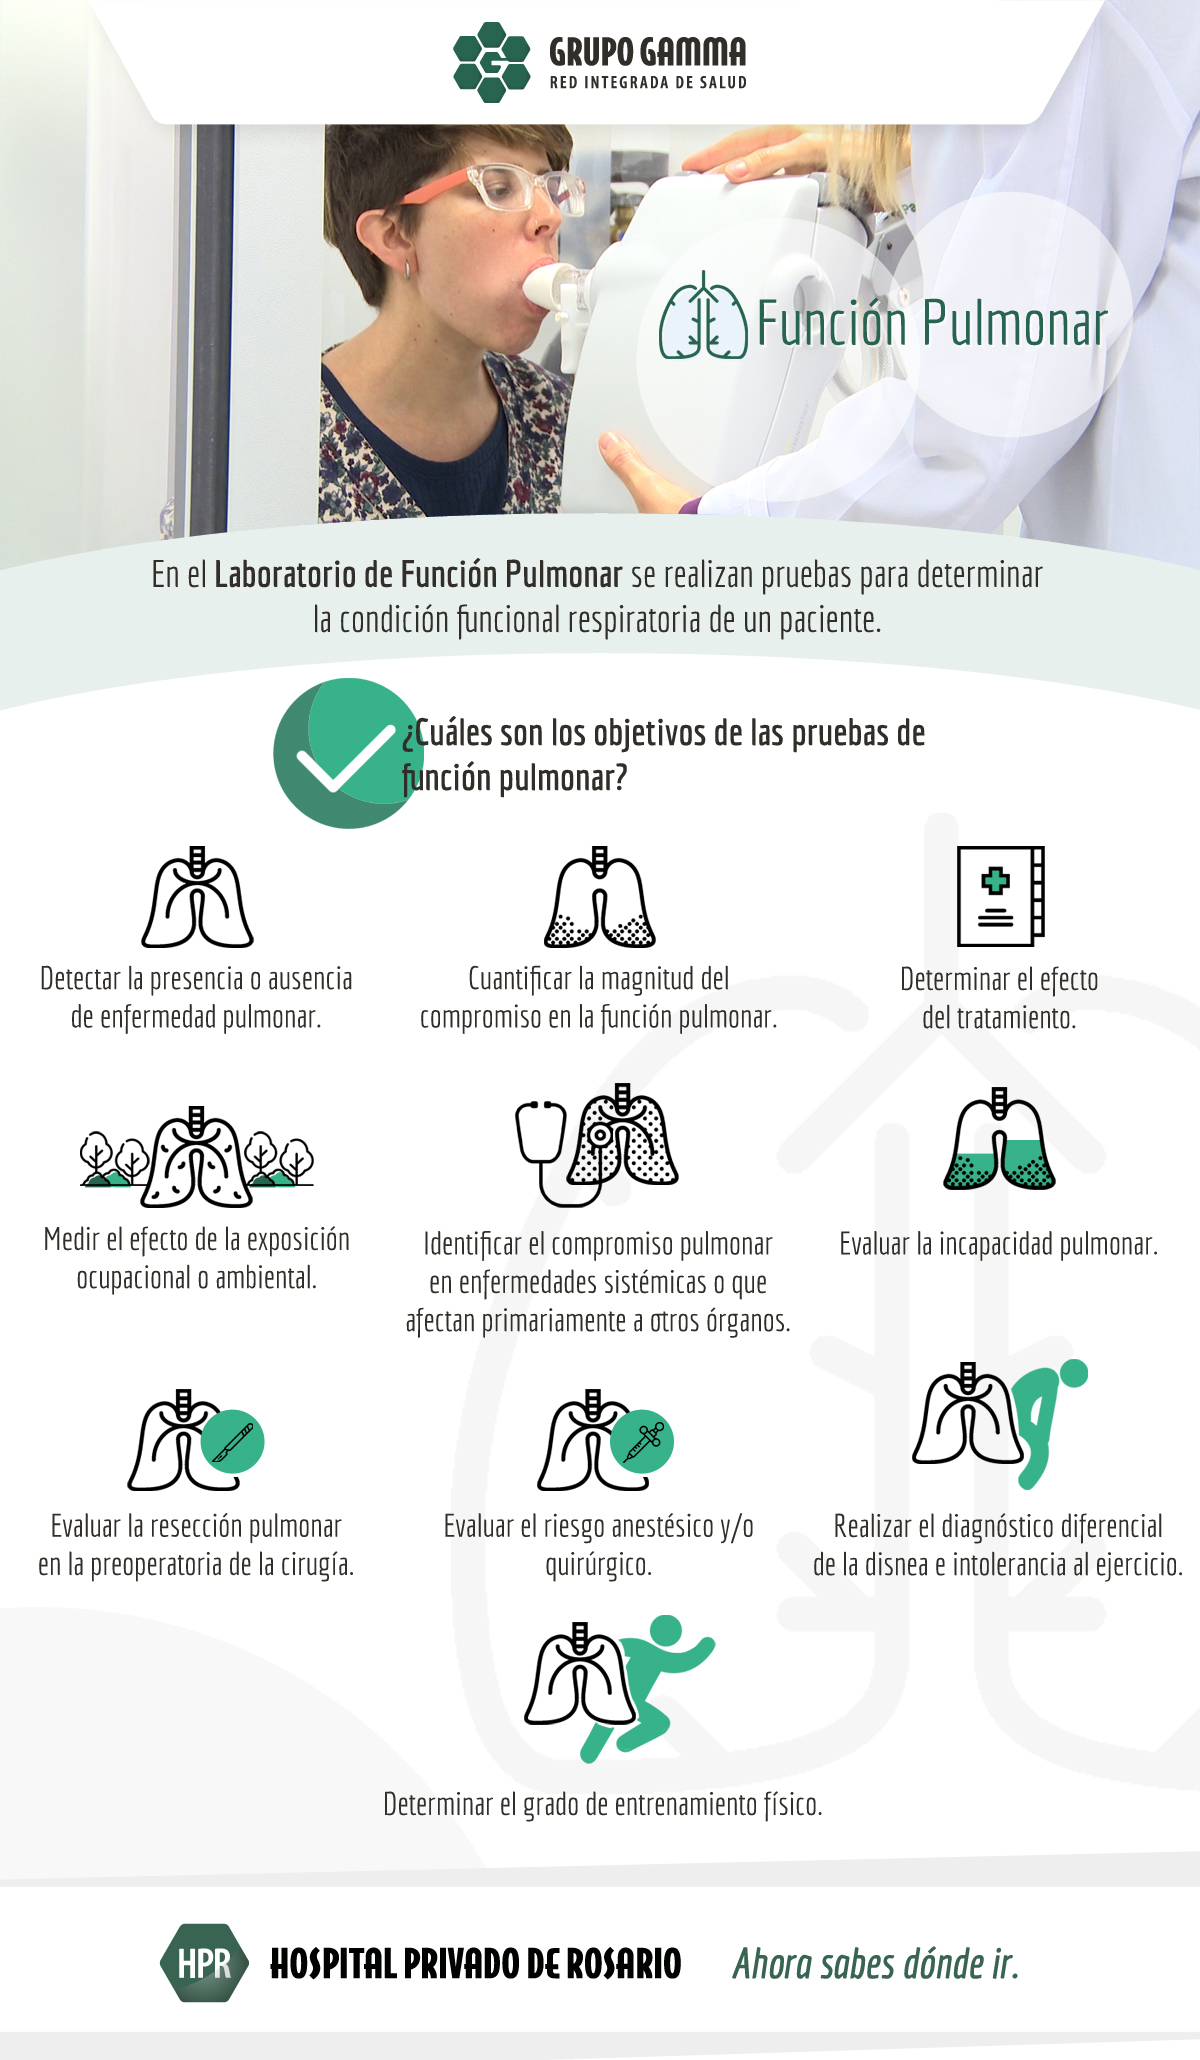 Grupo Gamma incorpora un Laboratorio de Función Pulmonar en el Hospital Privado de Rosario